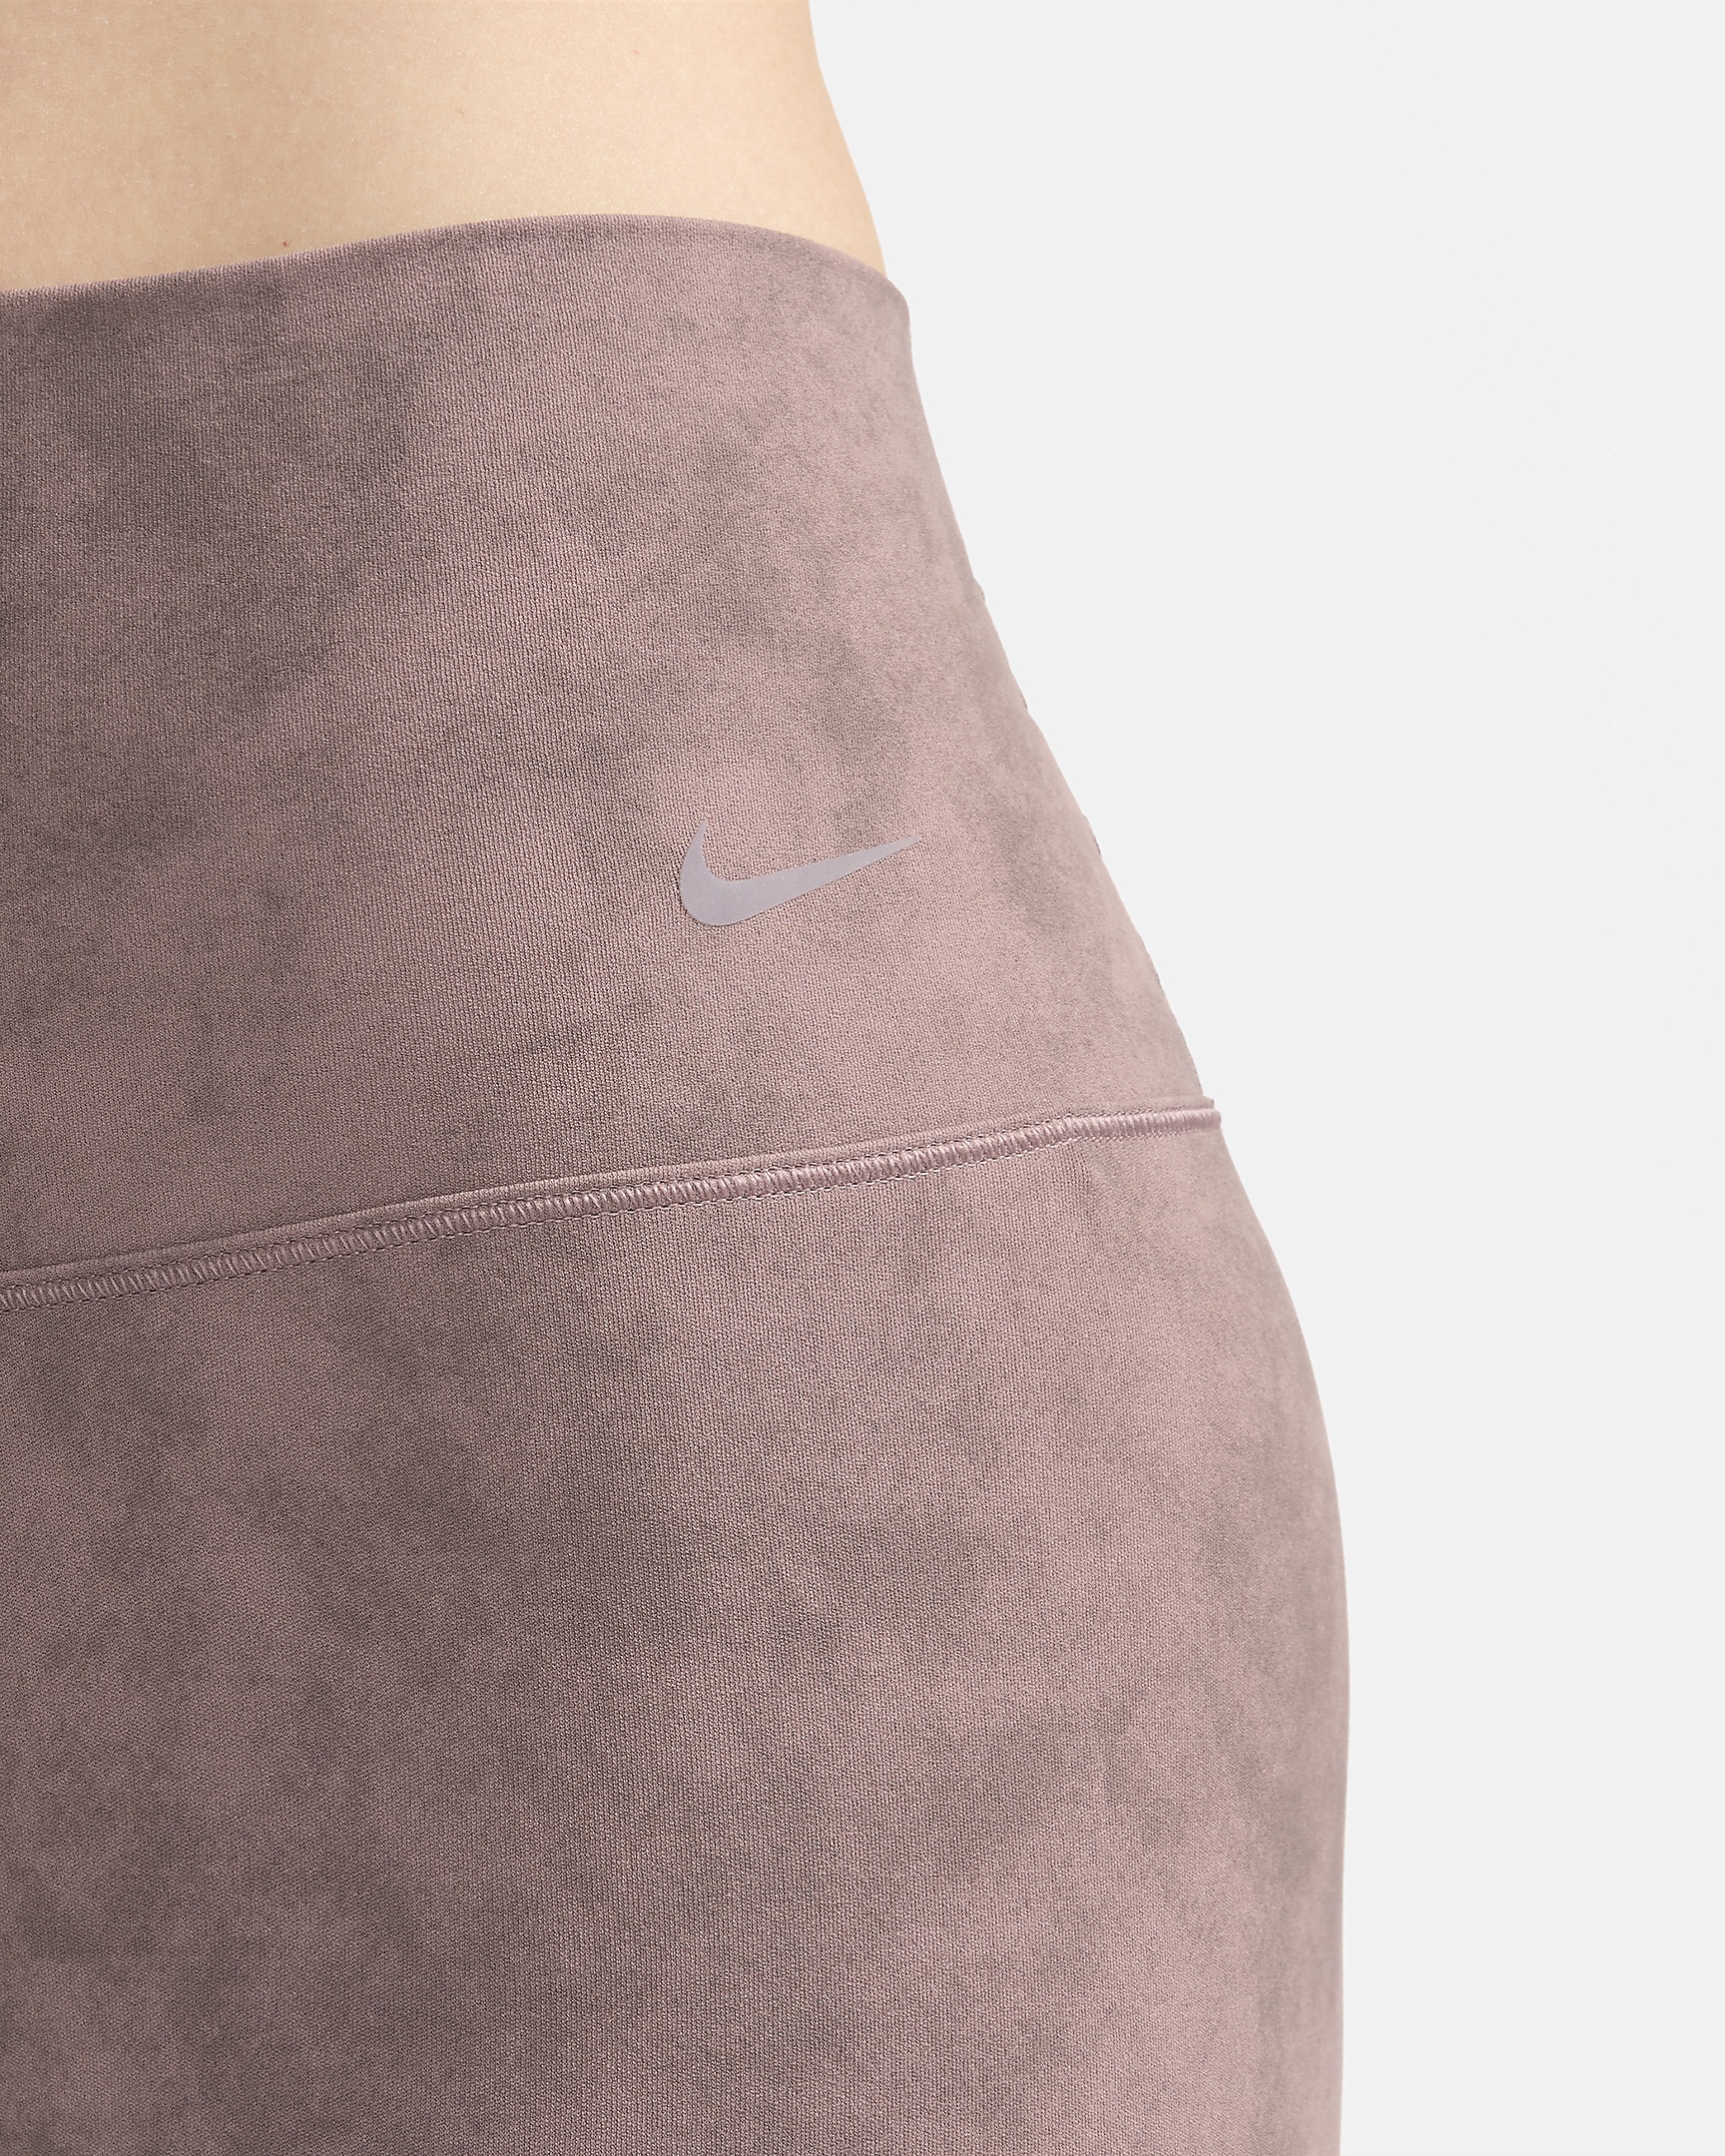 Nike Women's Zenvy Tie-Dye Gentle-Support High-Waisted 8" Biker Shorts - 5